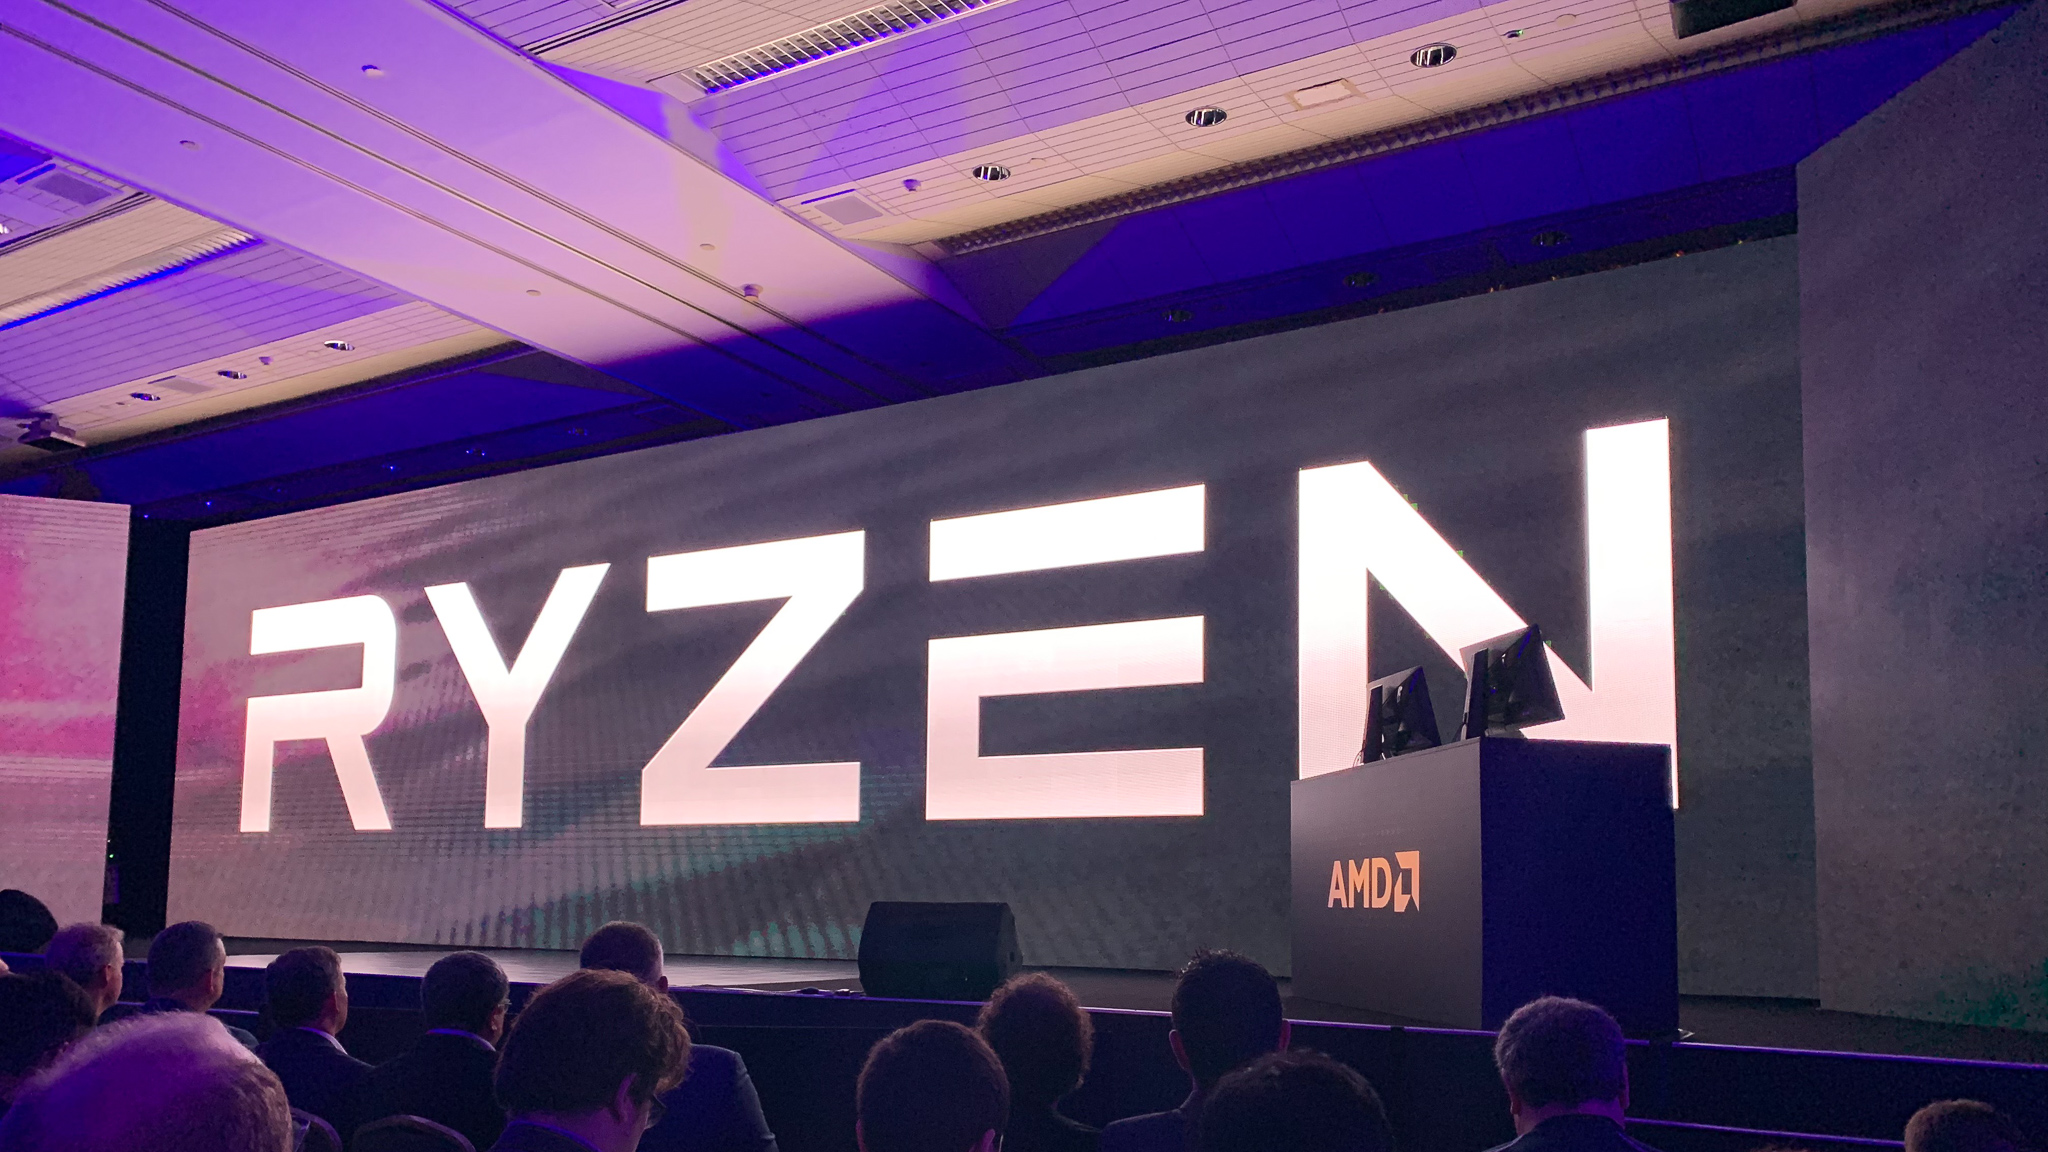 Procesory AMD: Nejlepší procesor Amd v roce 2021